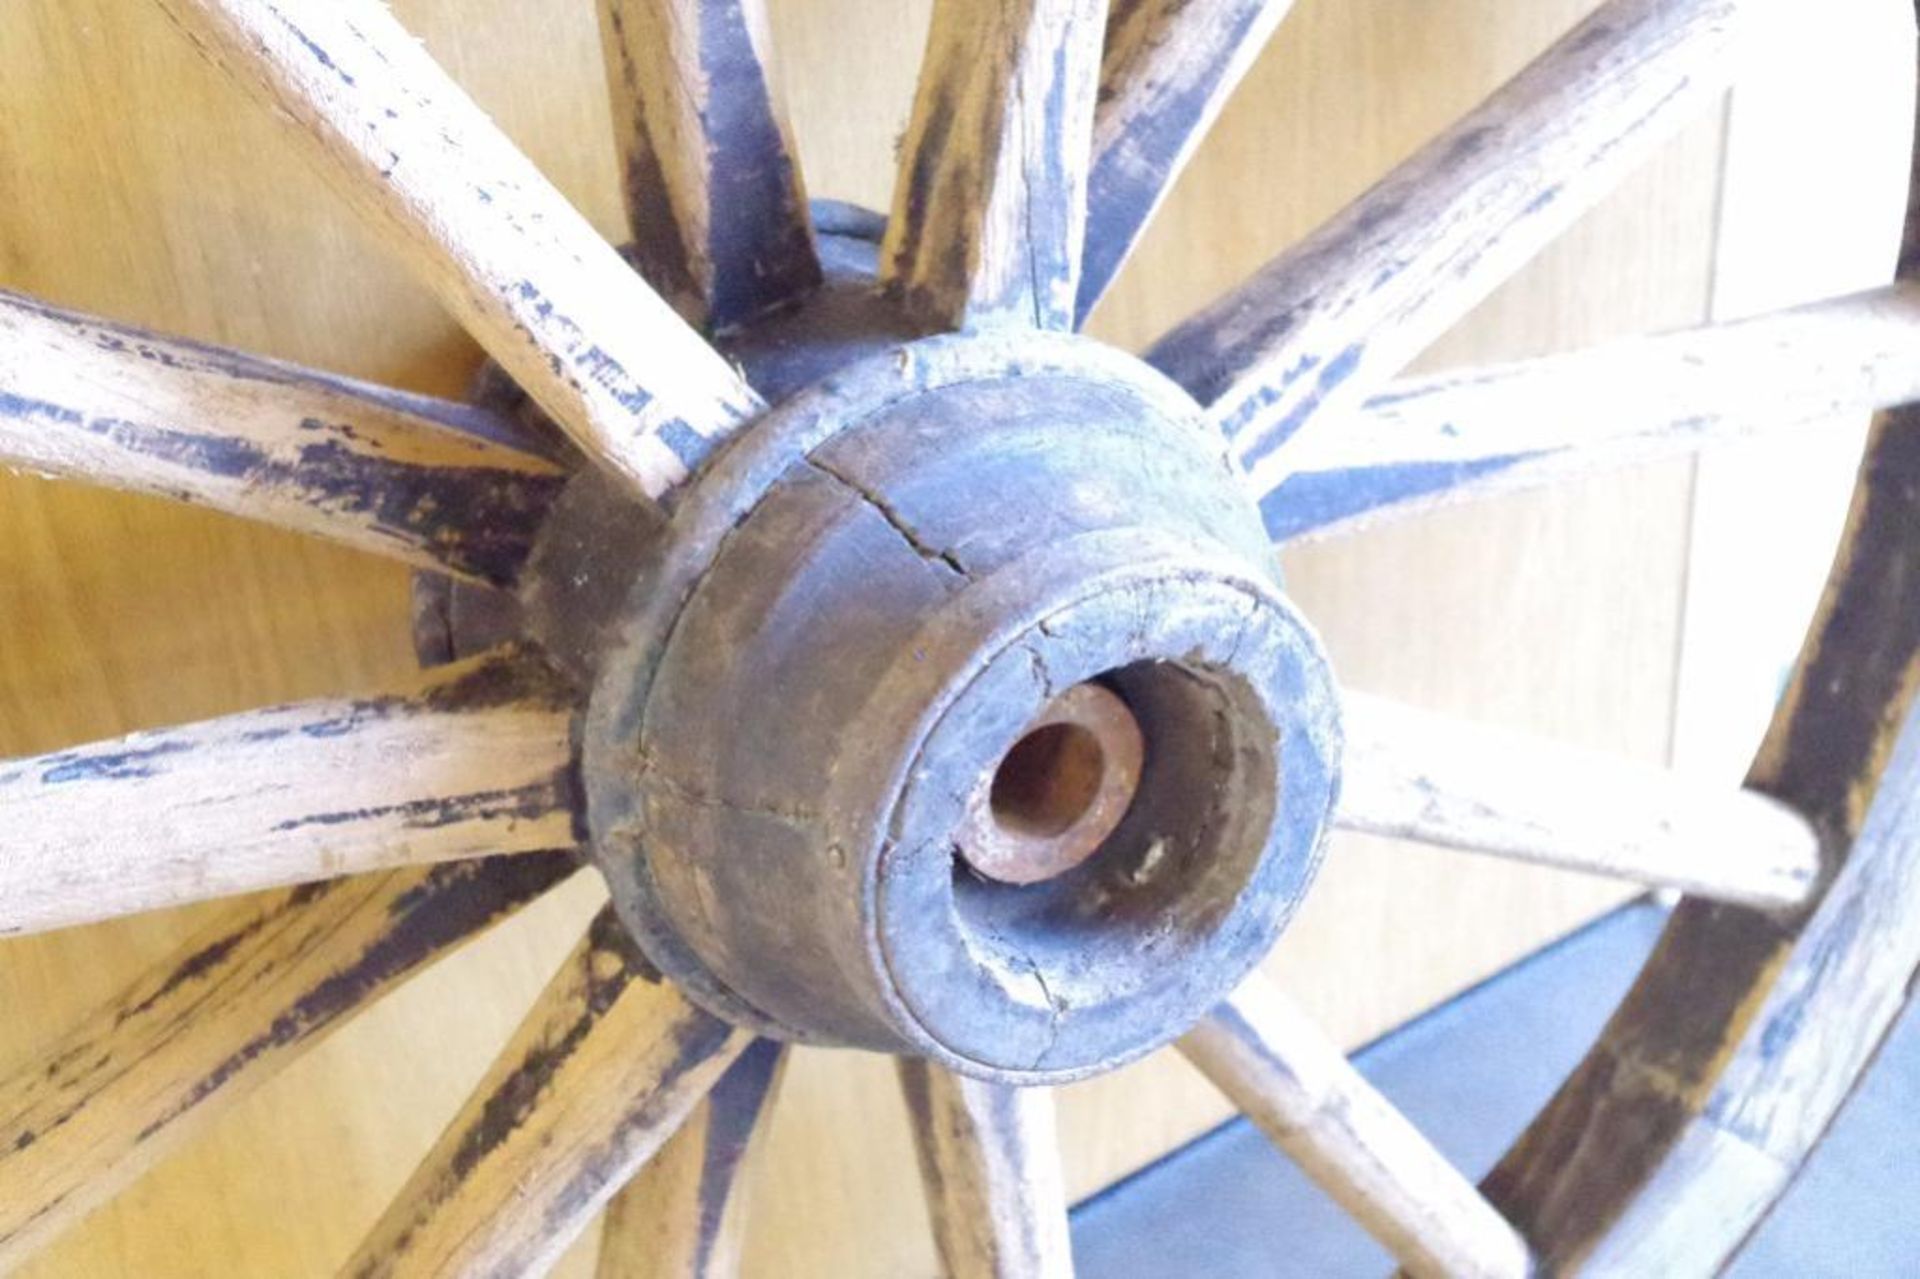 14-Spoke Large Wagon Wheel: 38" Diameter - Image 2 of 3